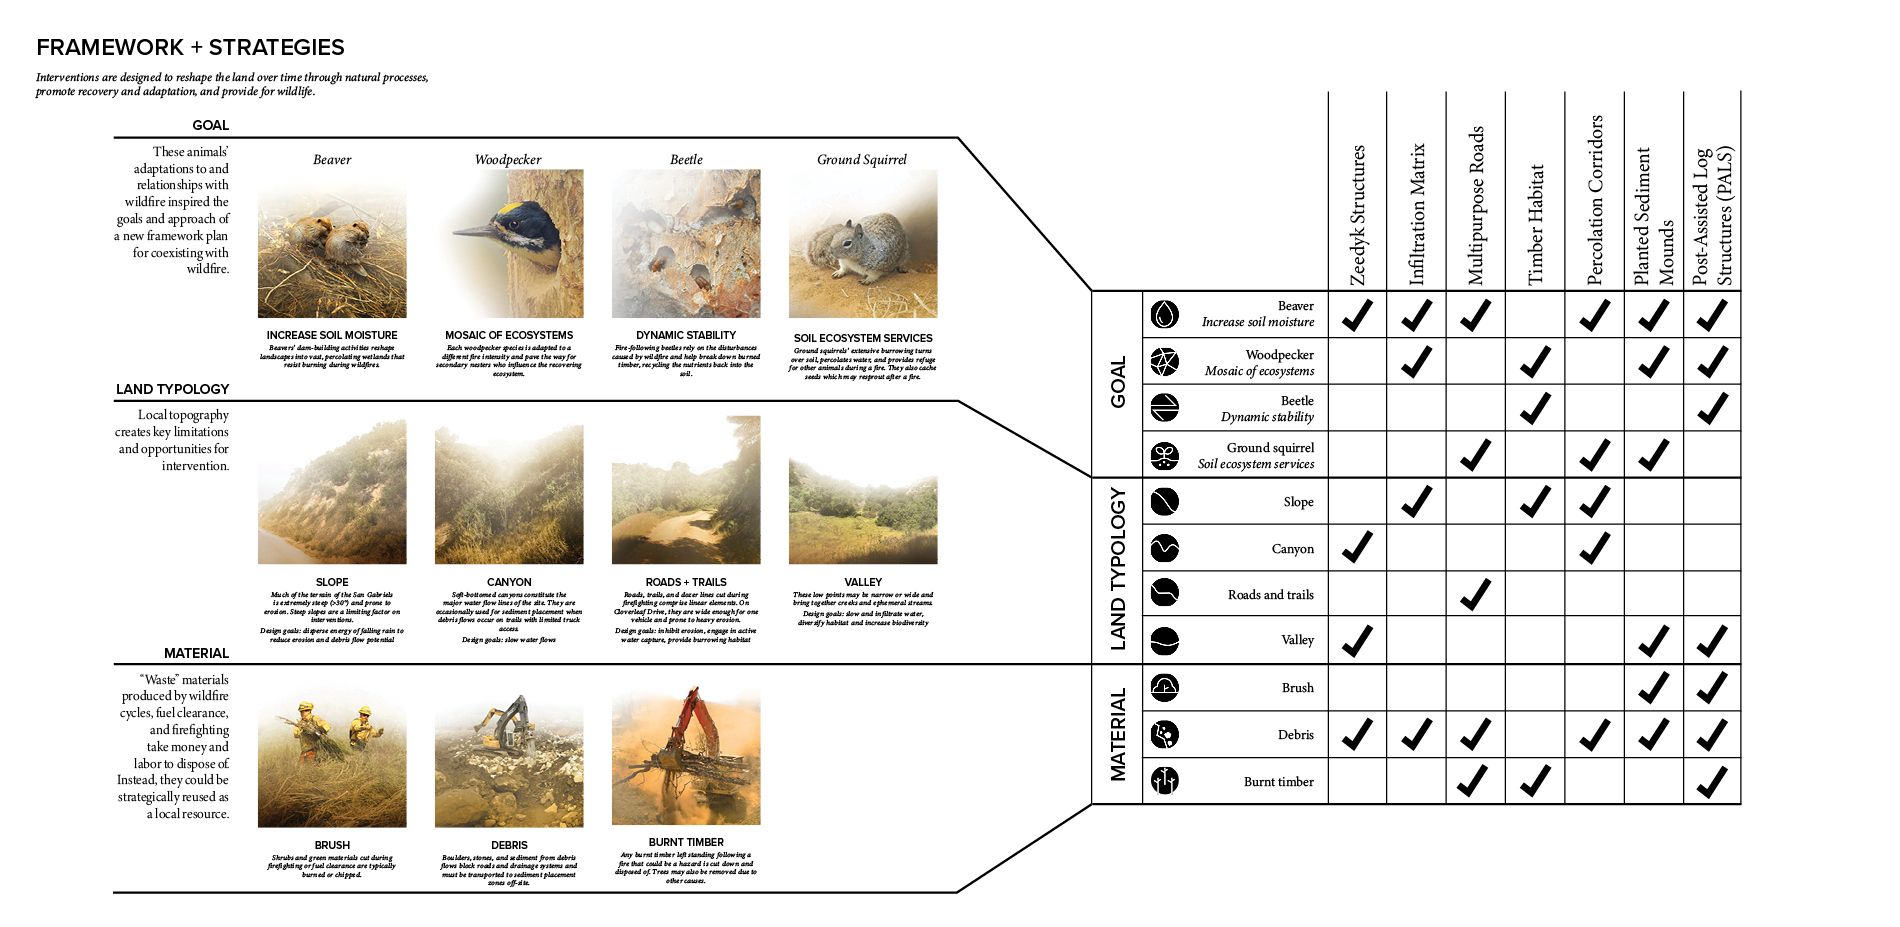 A New Wildfire Land Management Framework